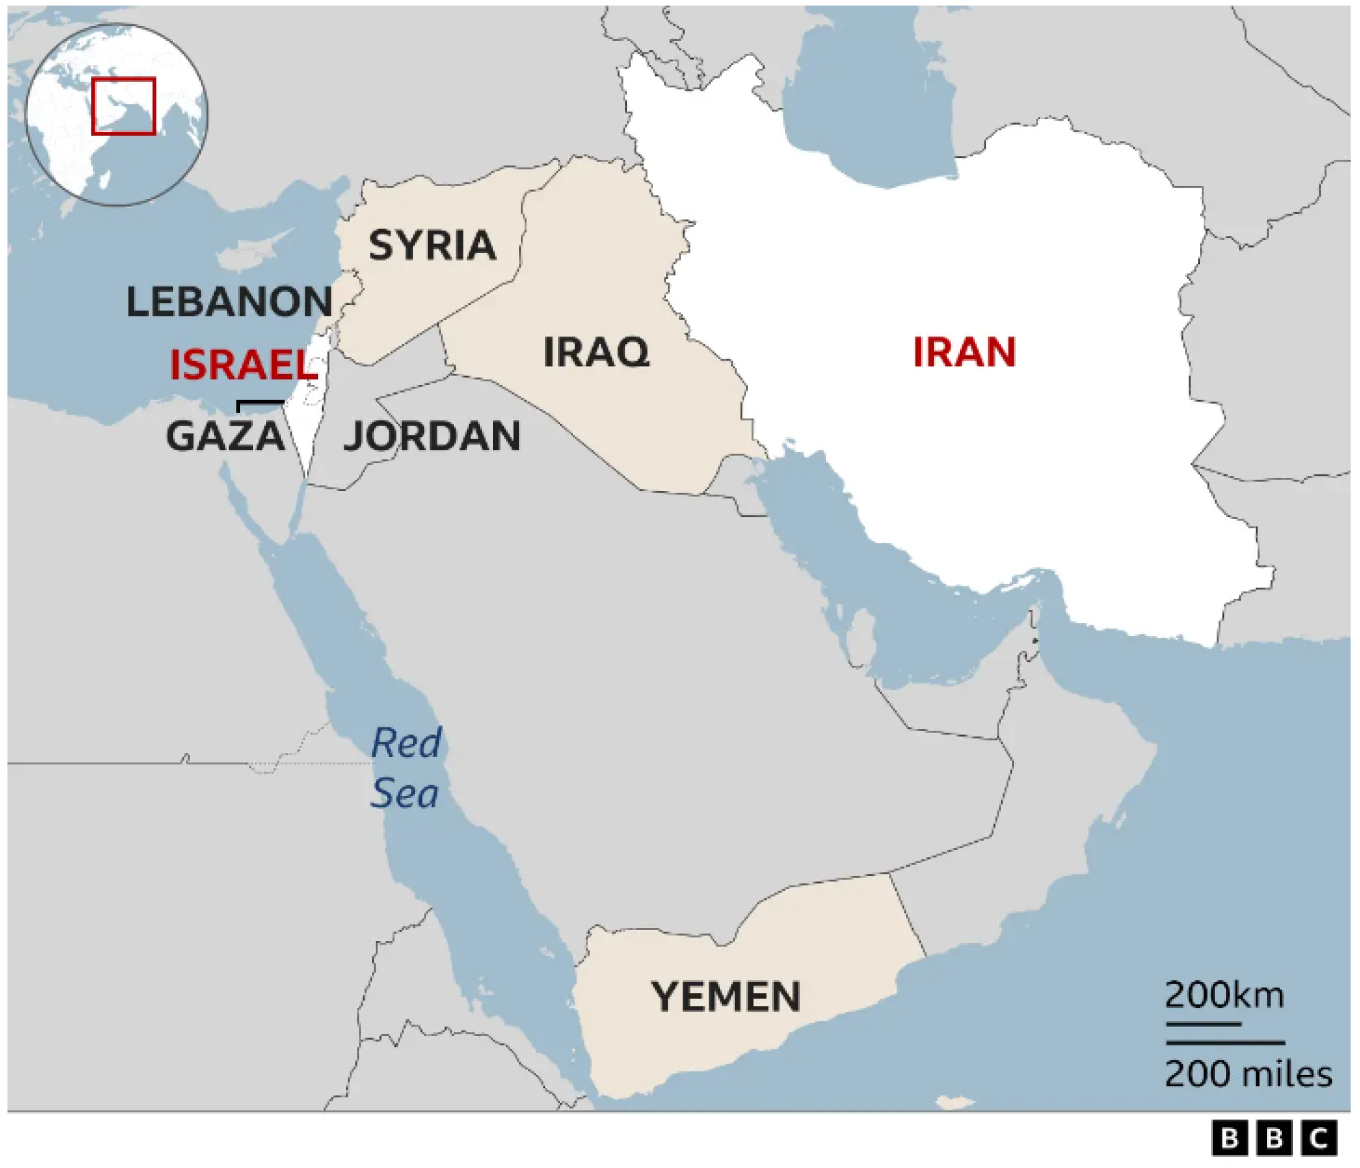 Πώς συγκρίνονται οι στρατιωτικές δυνατότητες του Ιράν και του Ισραήλ